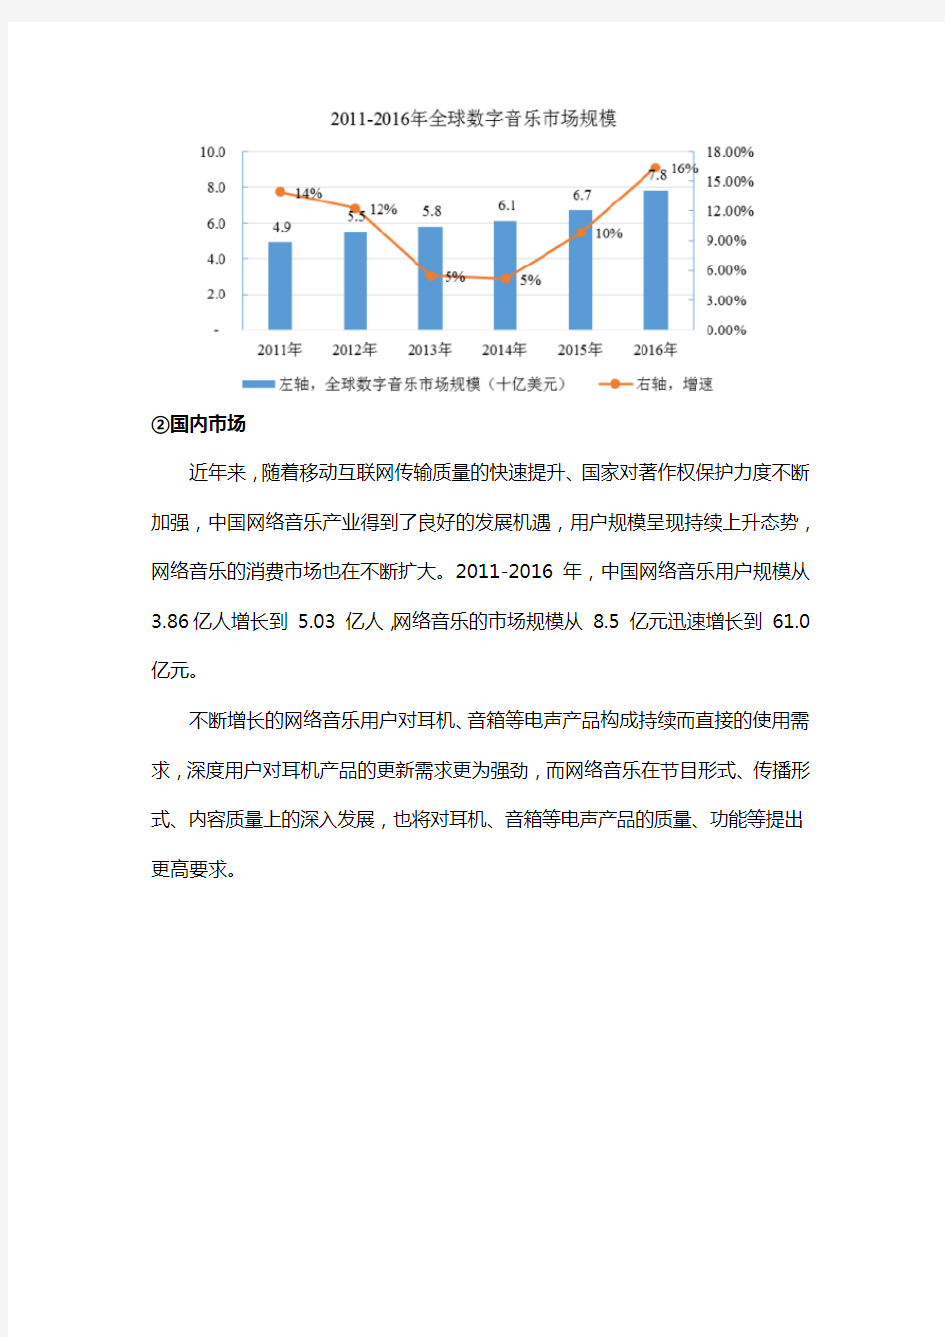 中国电声行业概况研究-行业市场需求